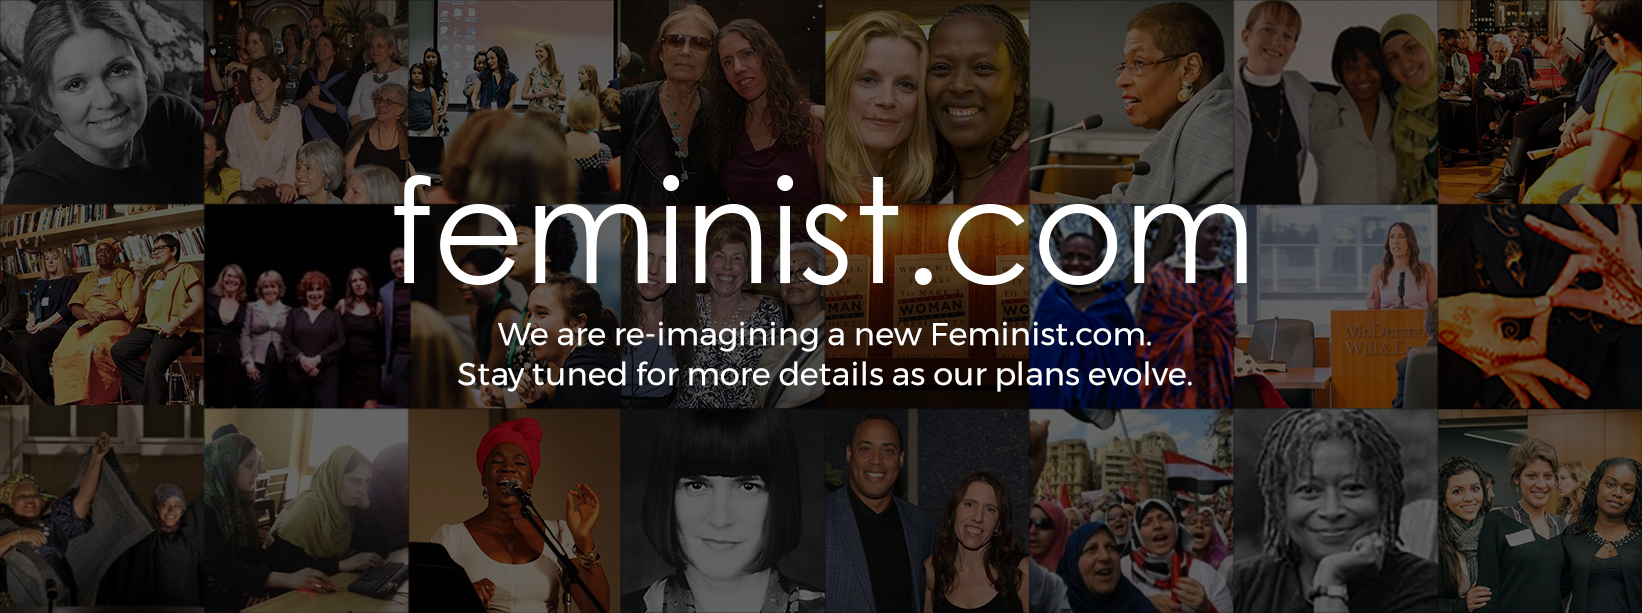 Feminist.com Message